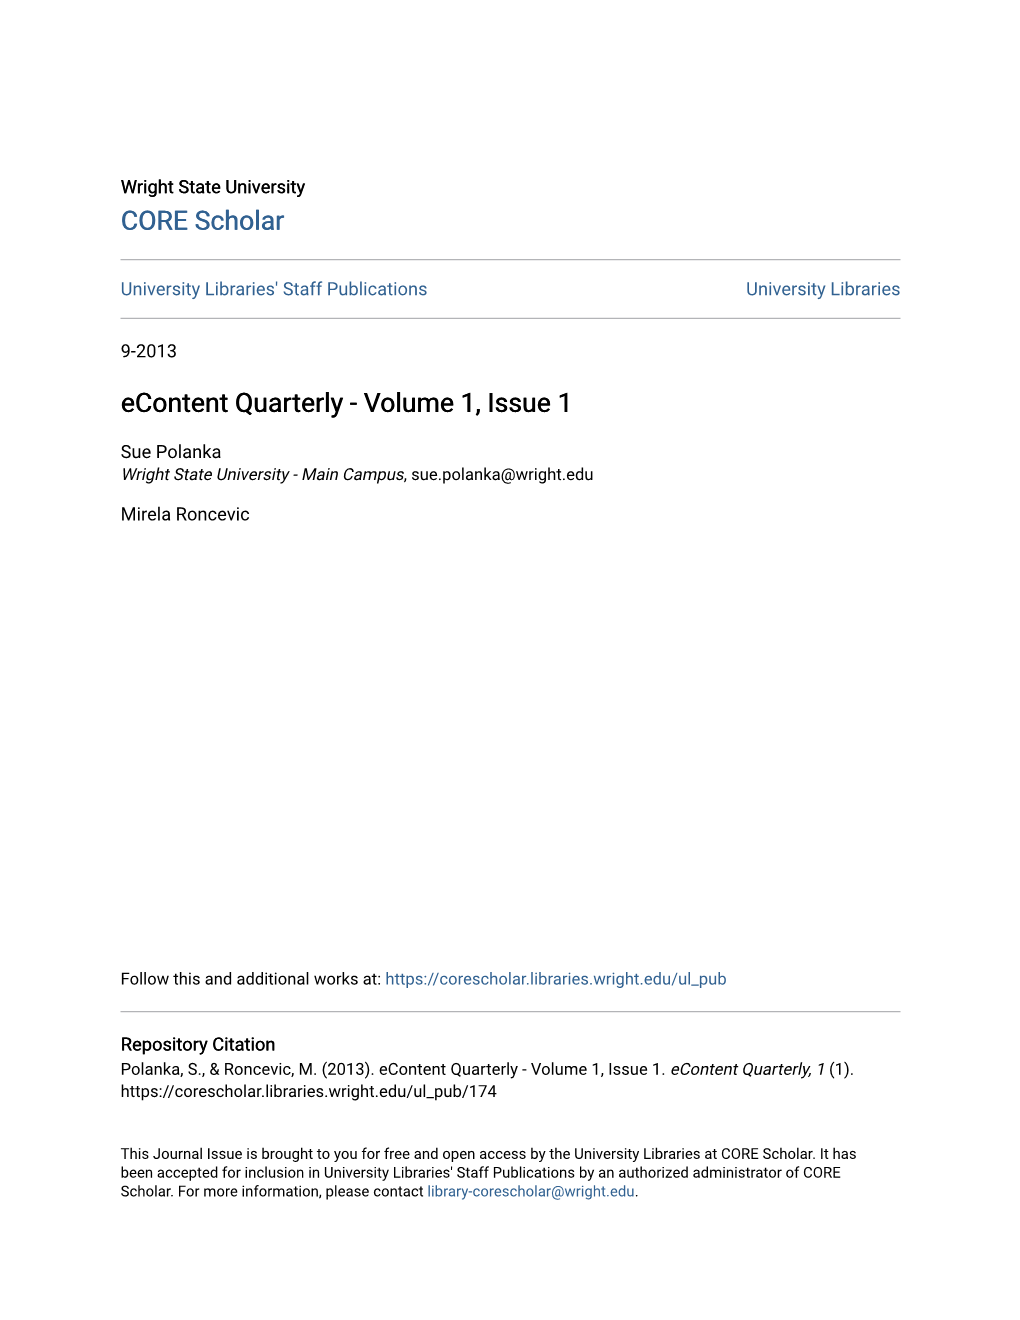 Econtent Quarterly - Volume 1, Issue 1